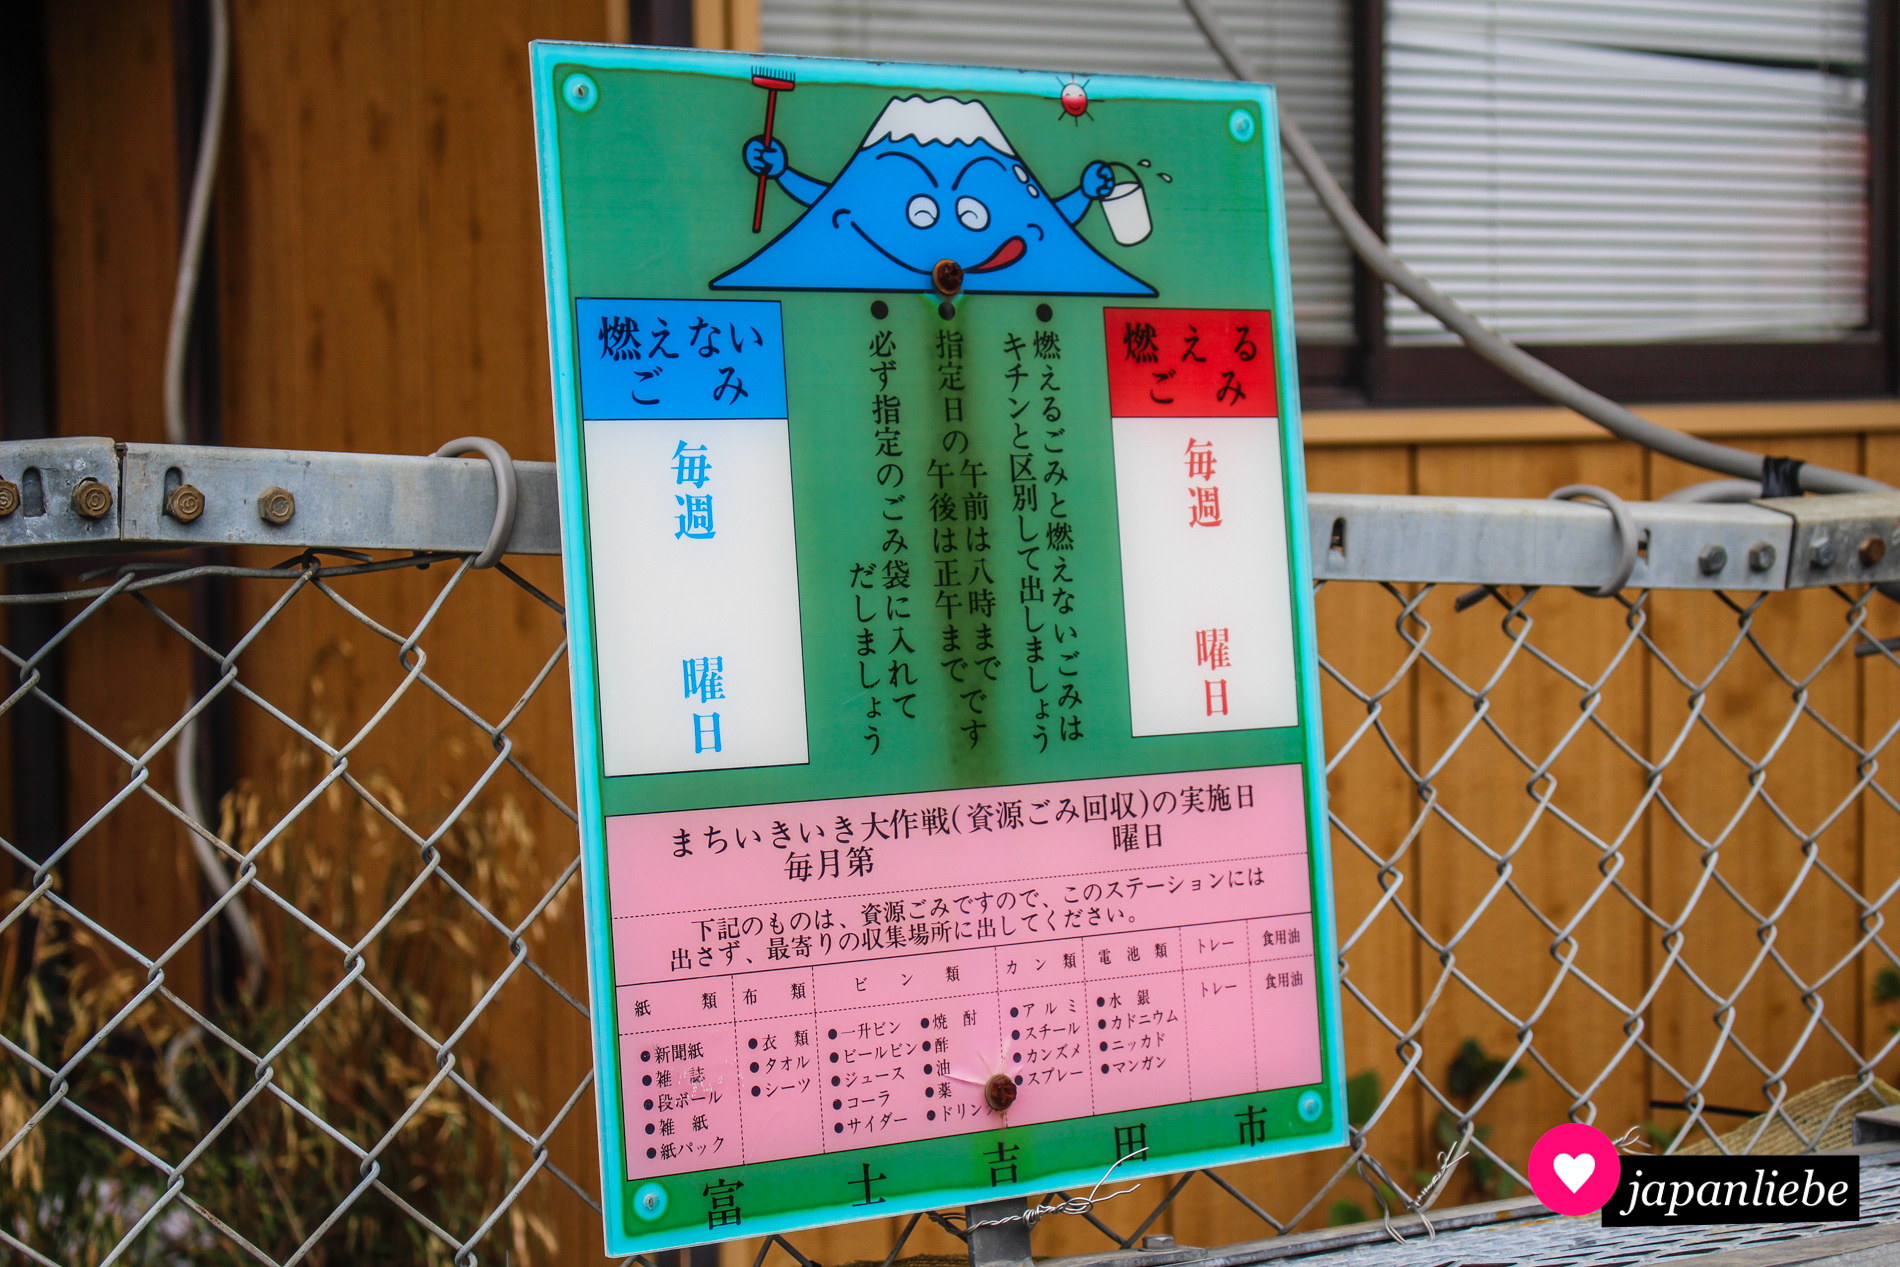 In der Stadt Fujiyoshida erklärt natürlich eine niedliche Version von Japans heiligem Berg wie das mit der Mülltrennung funktioniert.